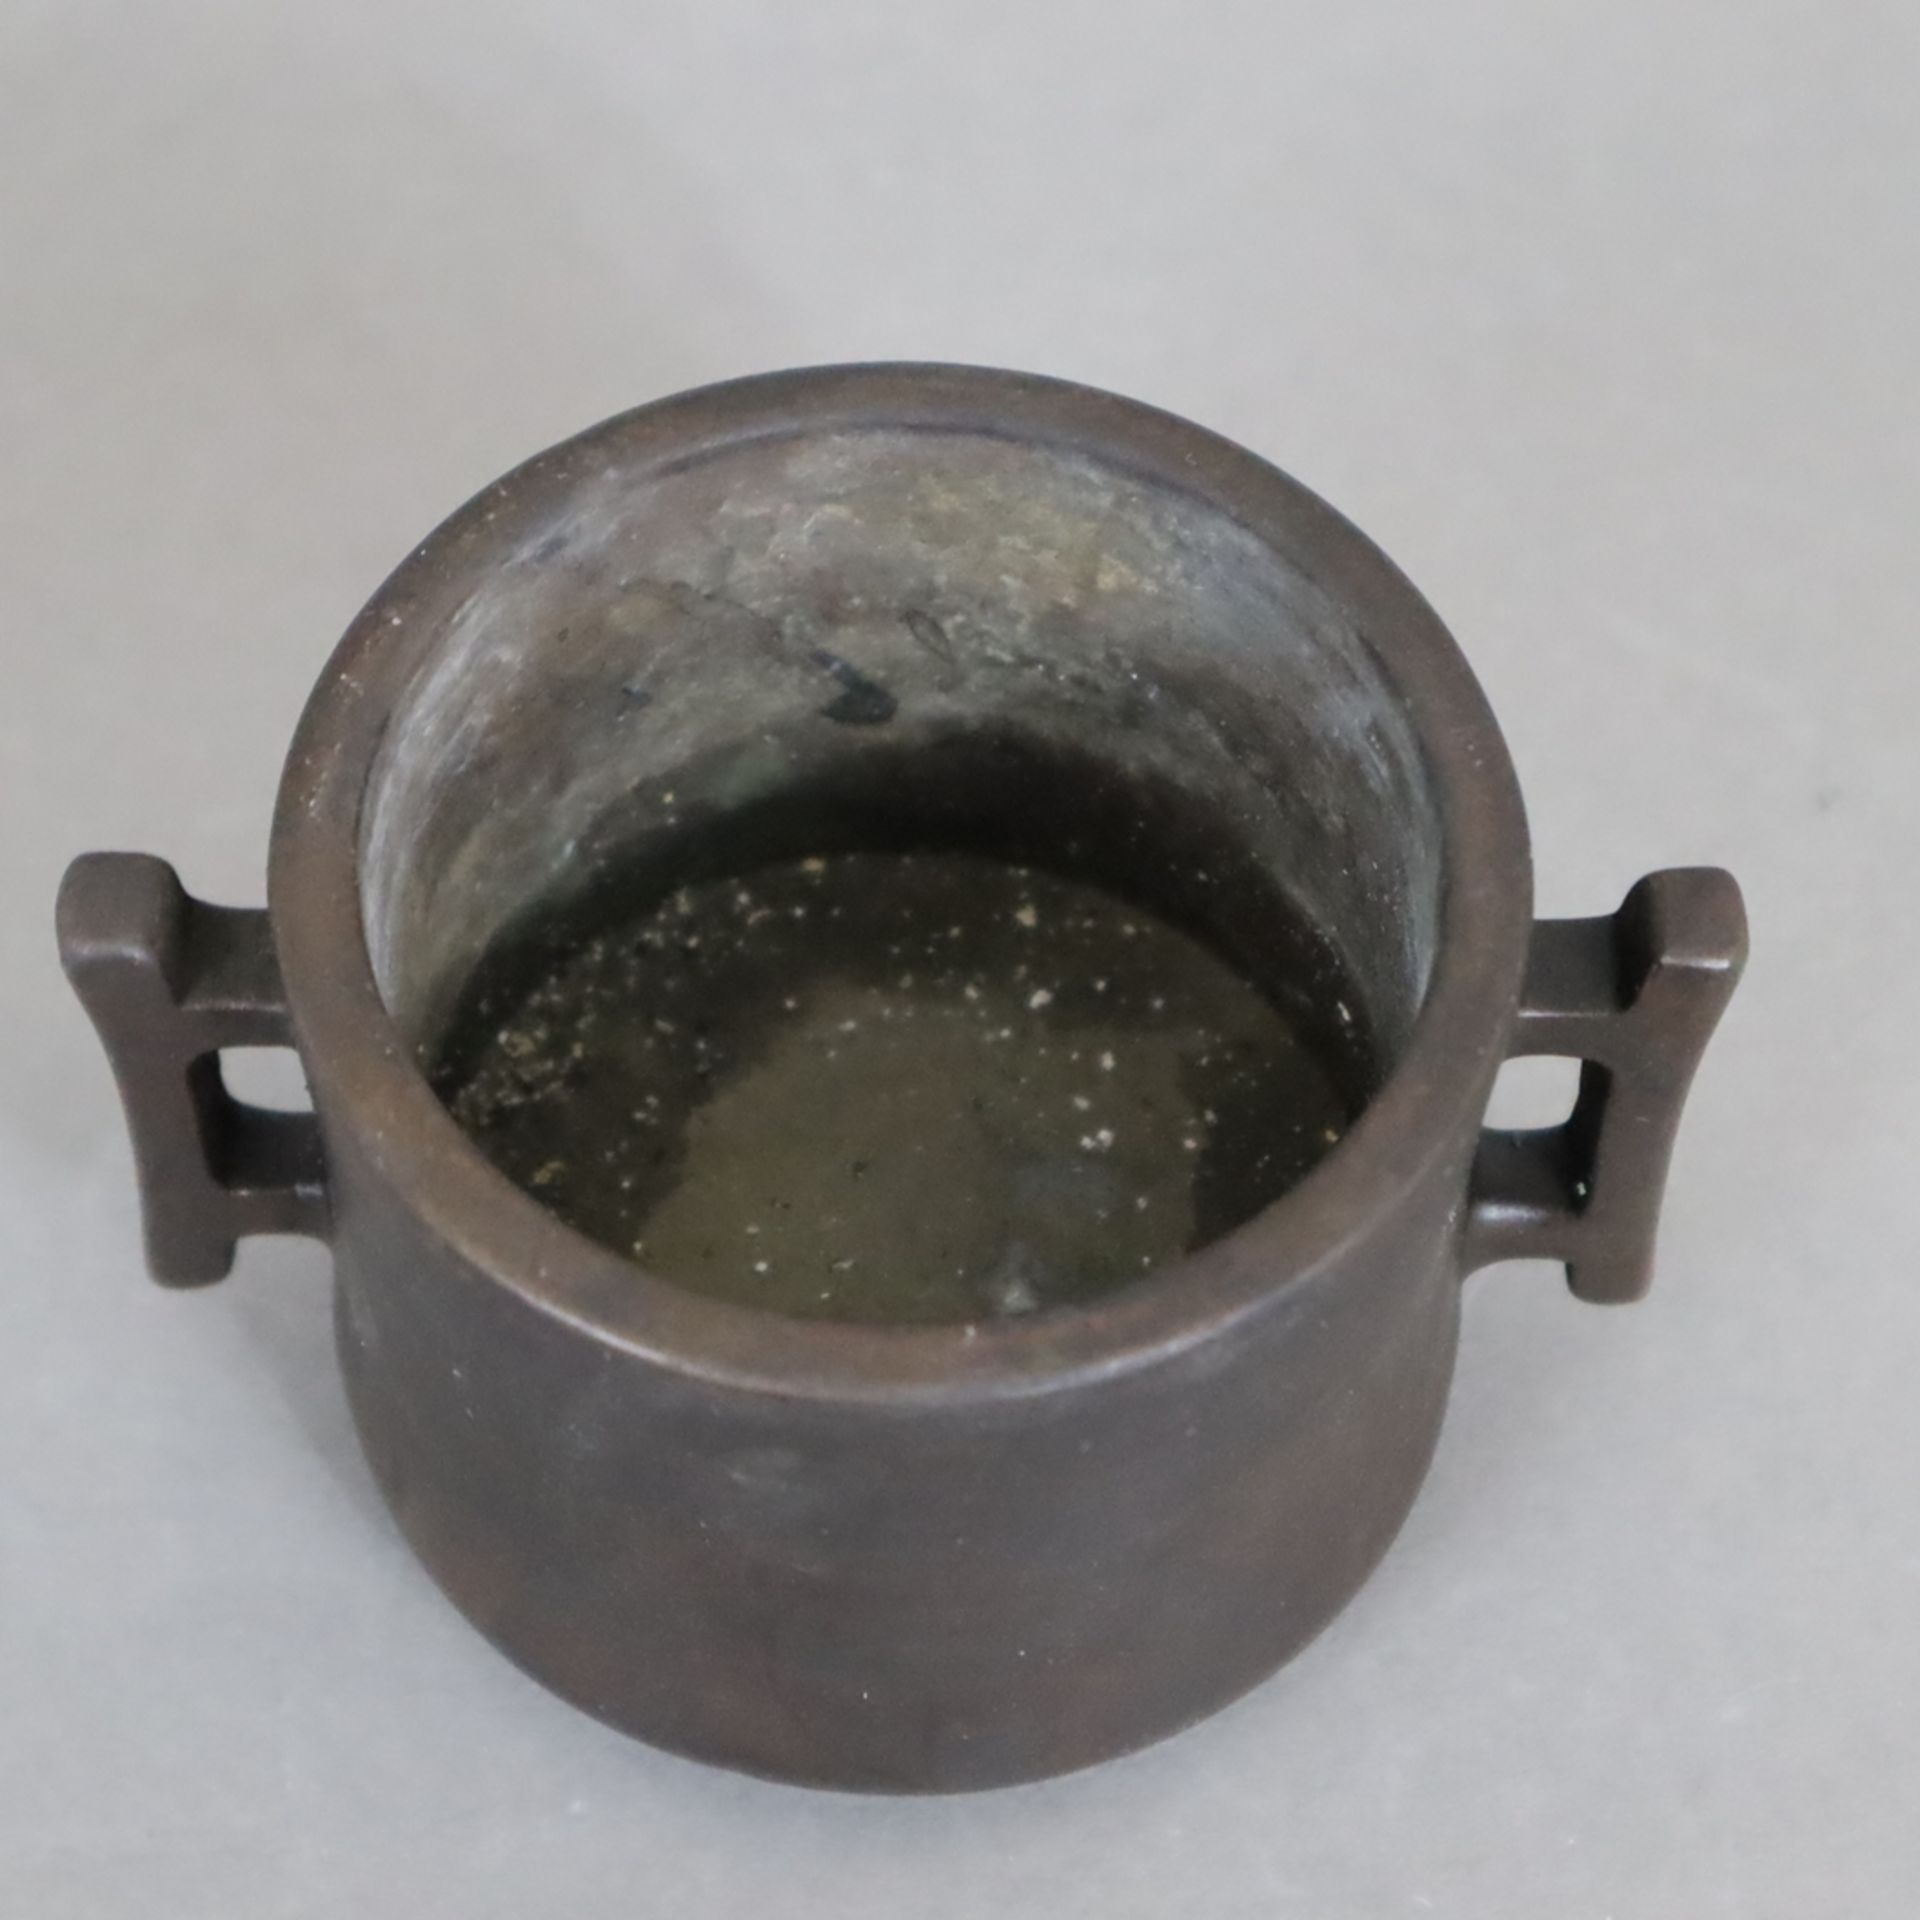 Kleines Räuchergefäß - Bronze mit dunkelbrauner Patina, zylindrisches leicht tailliertes Räuchergef - Bild 2 aus 6